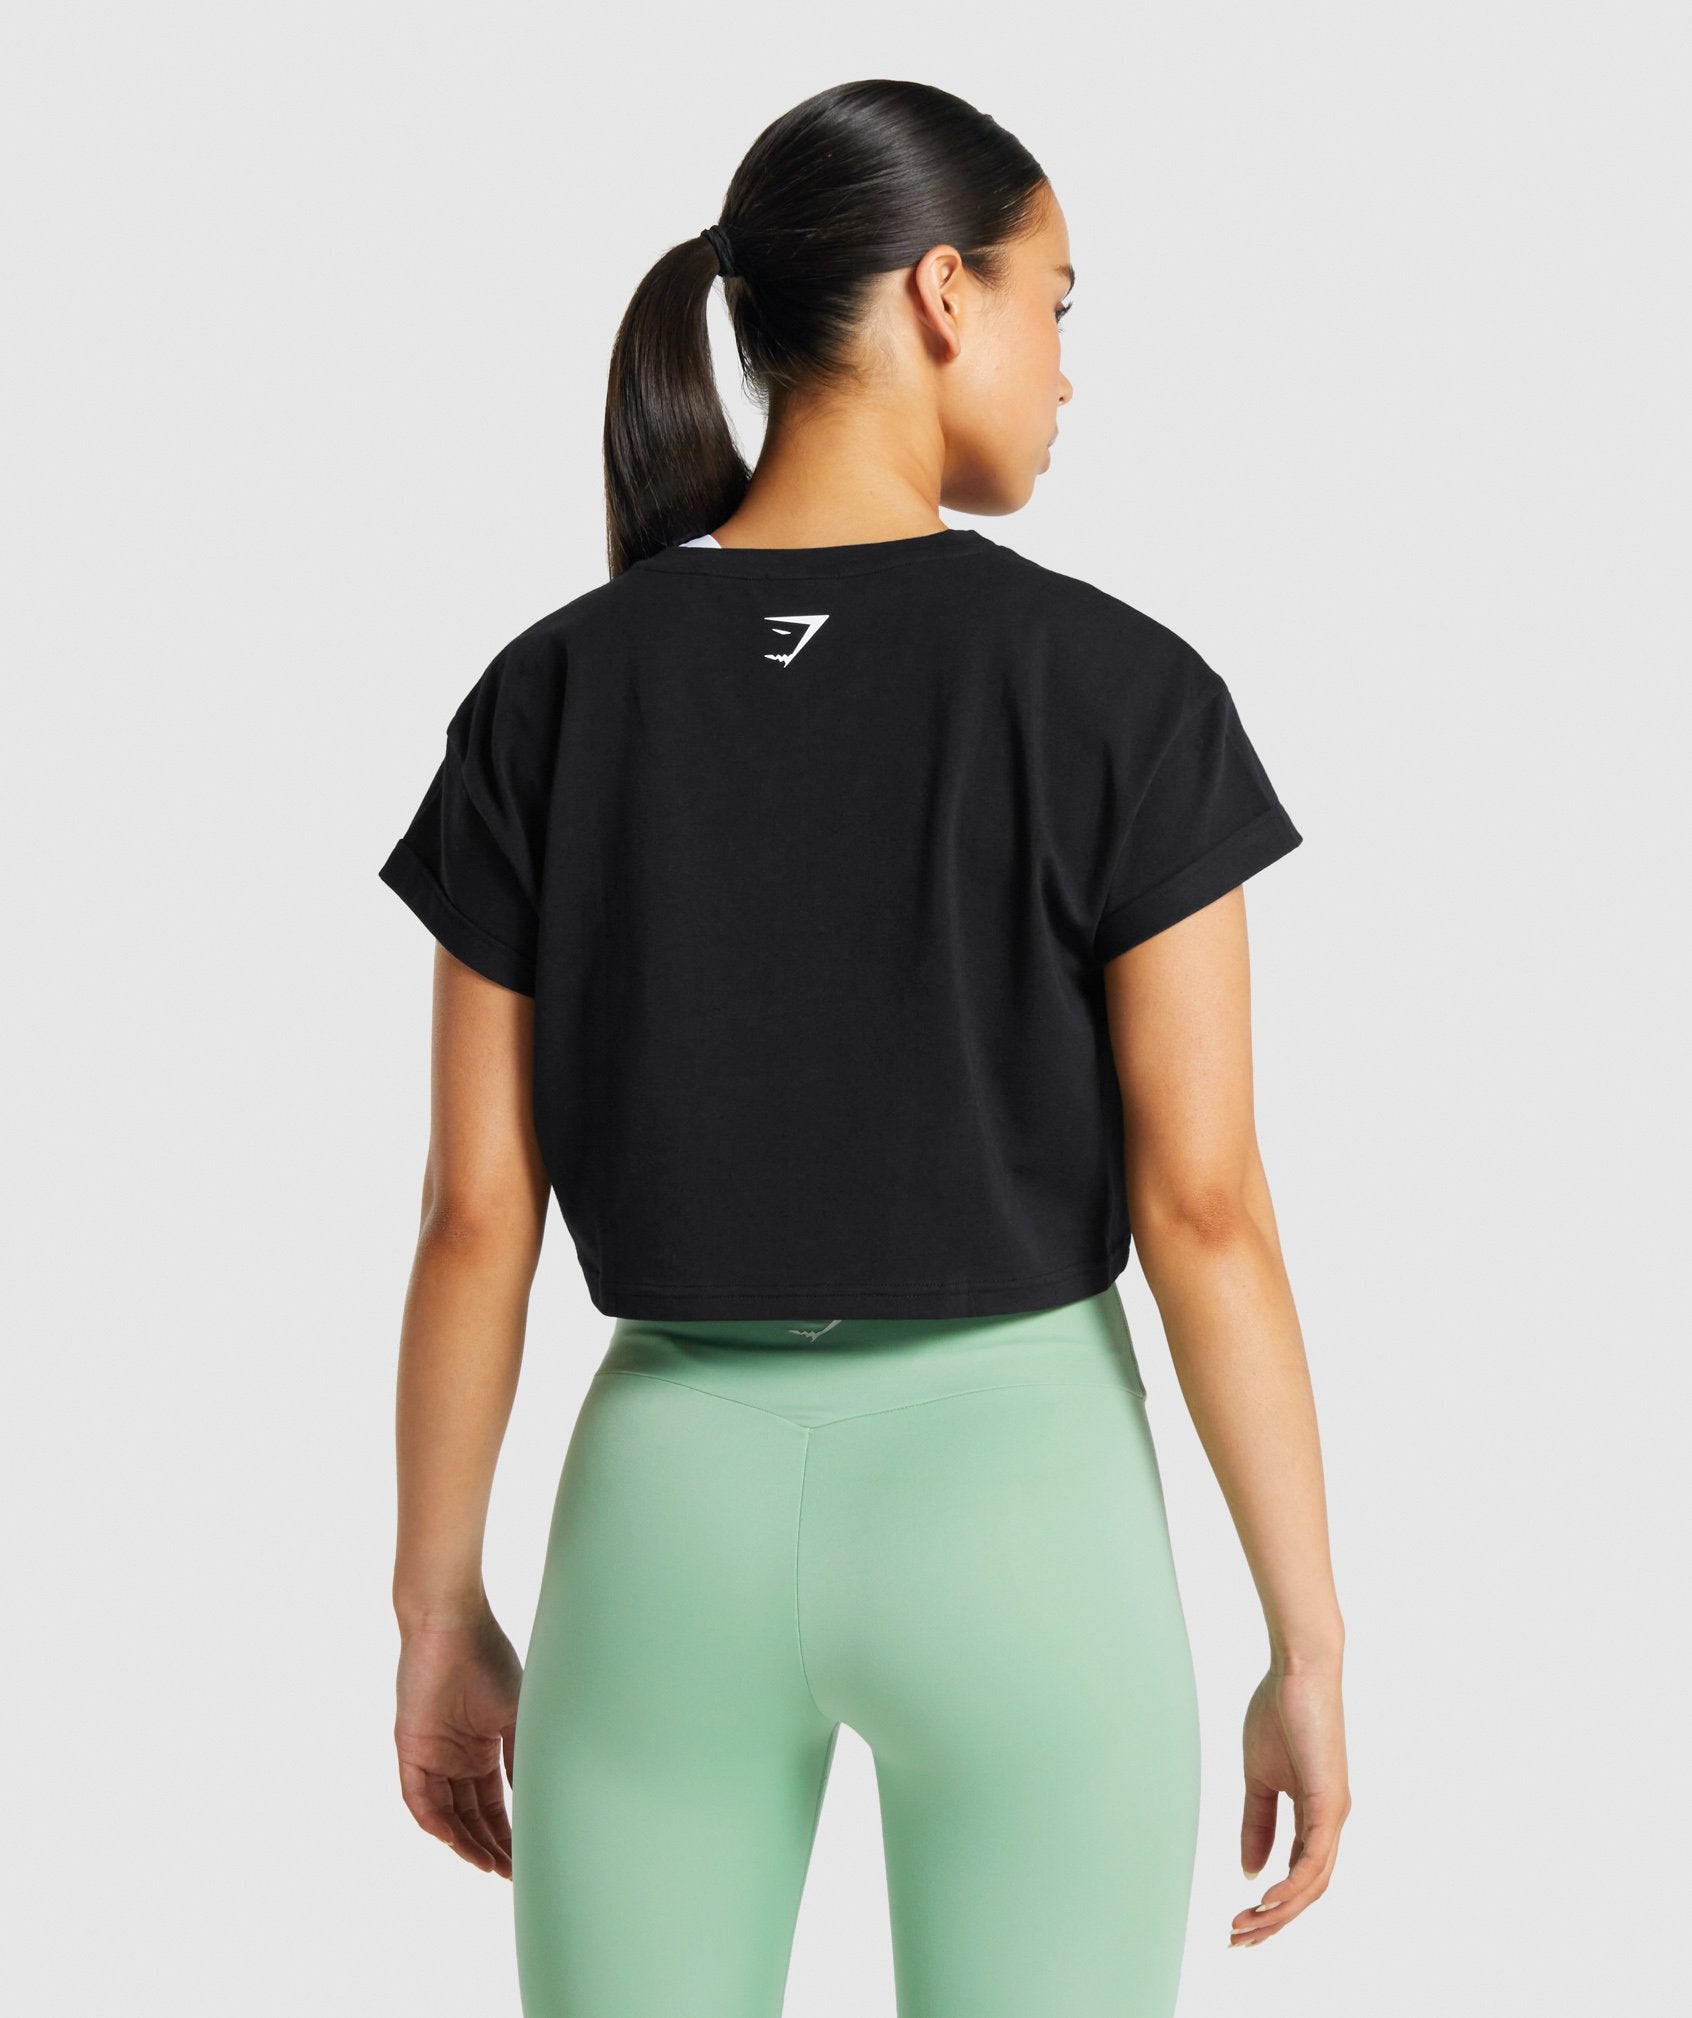 Gymshark - Fraction Crop Top on Designer Wardrobe